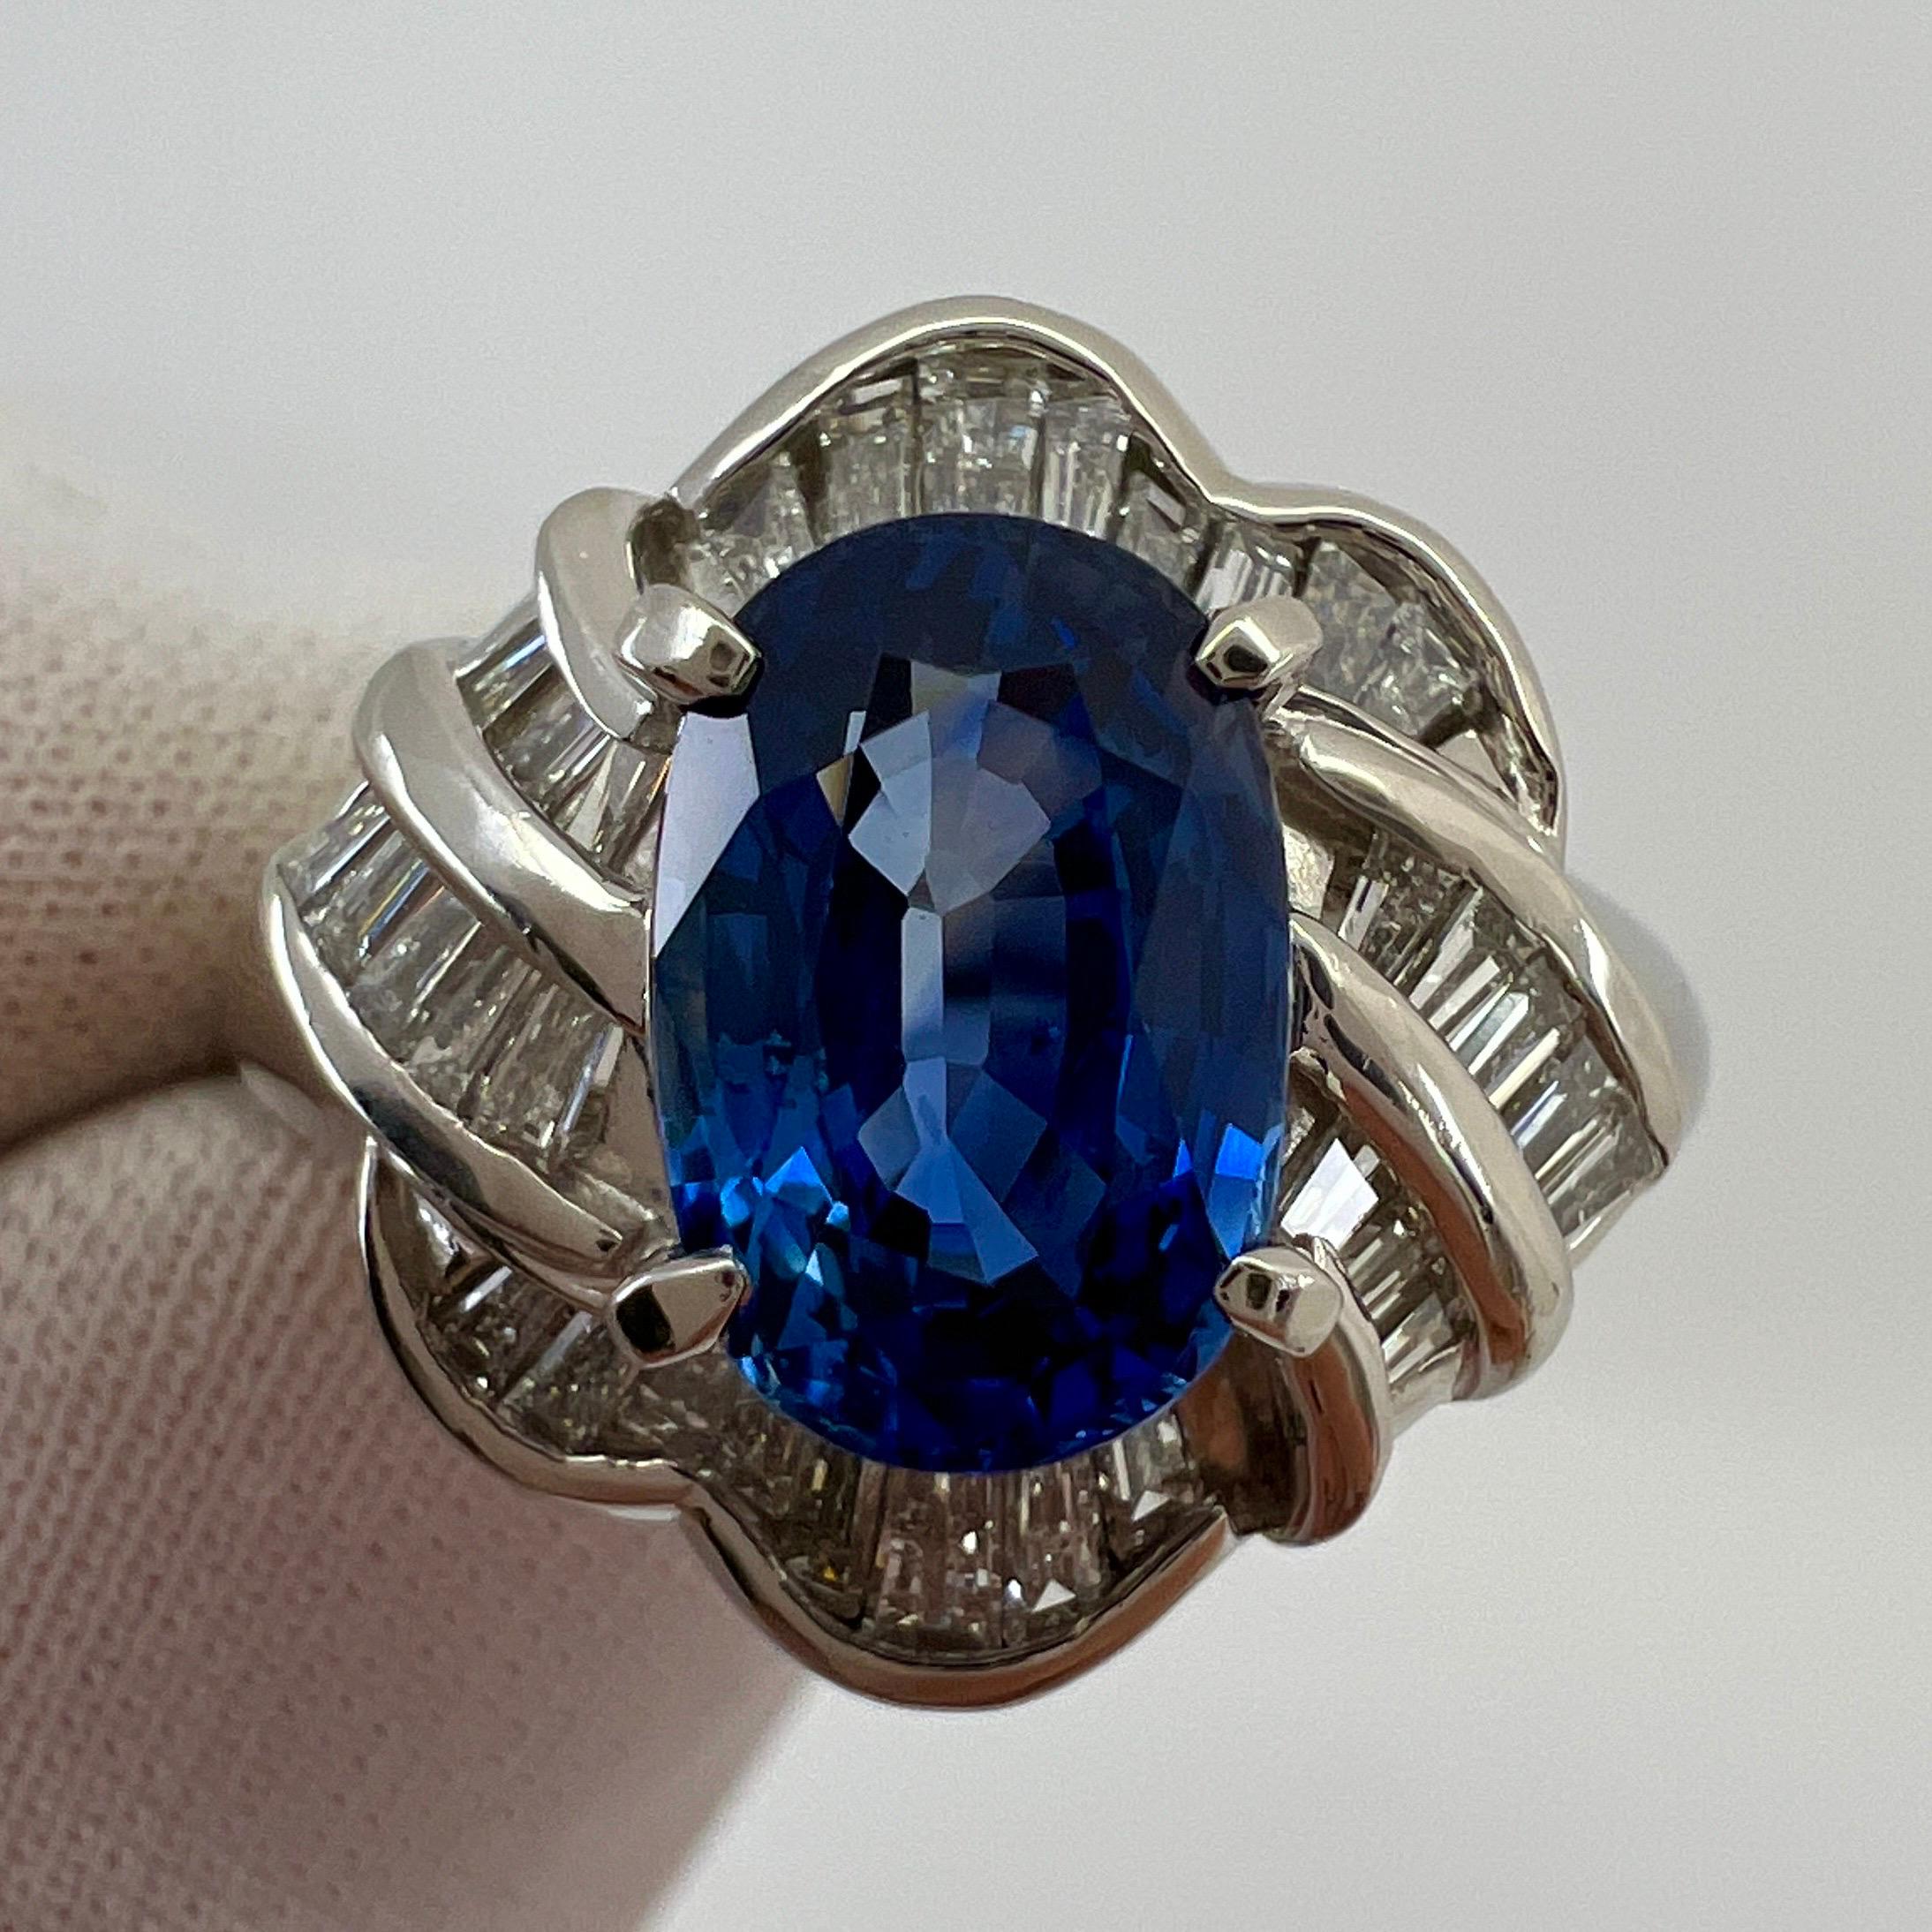 Feiner Ceylon Blauer Saphir & Diamant Platin Cocktail Ring.

3.27 Karat Gesamtgewicht. 2.67 Karat Ceylon-Saphir mit einer atemberaubenden lebhaften blauen Farbe und ausgezeichneter Klarheit. Sehr sauberer Stein. Außerdem hat er einen ausgezeichneten